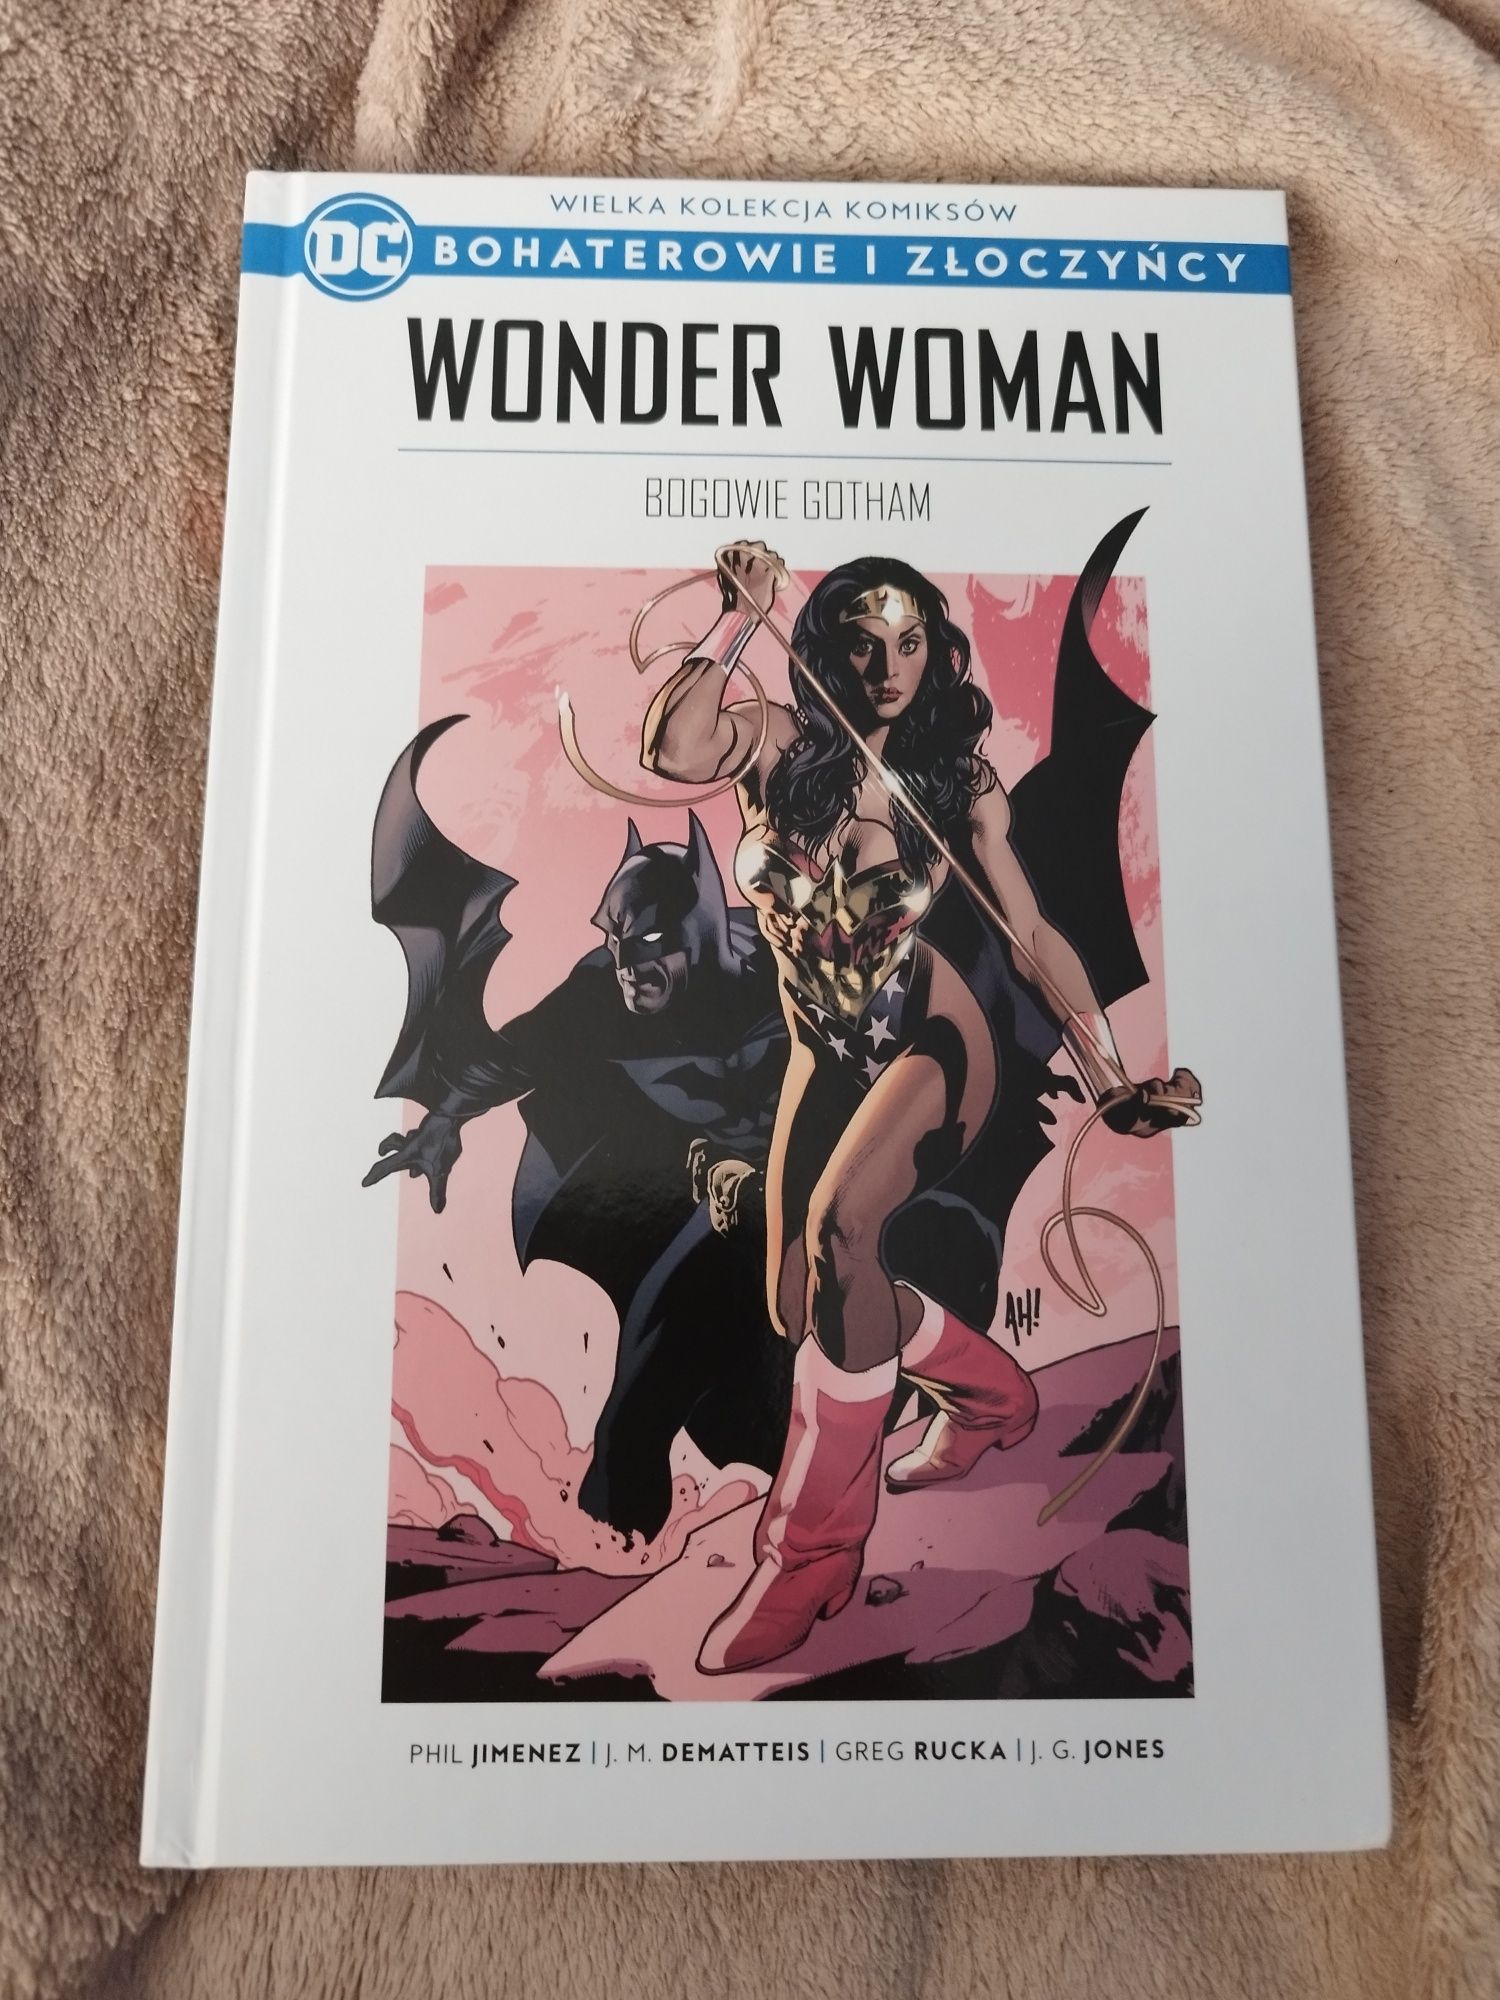 DC Bohaterowie i Złoczyńcy Wonder Woman Bogowie Gotham